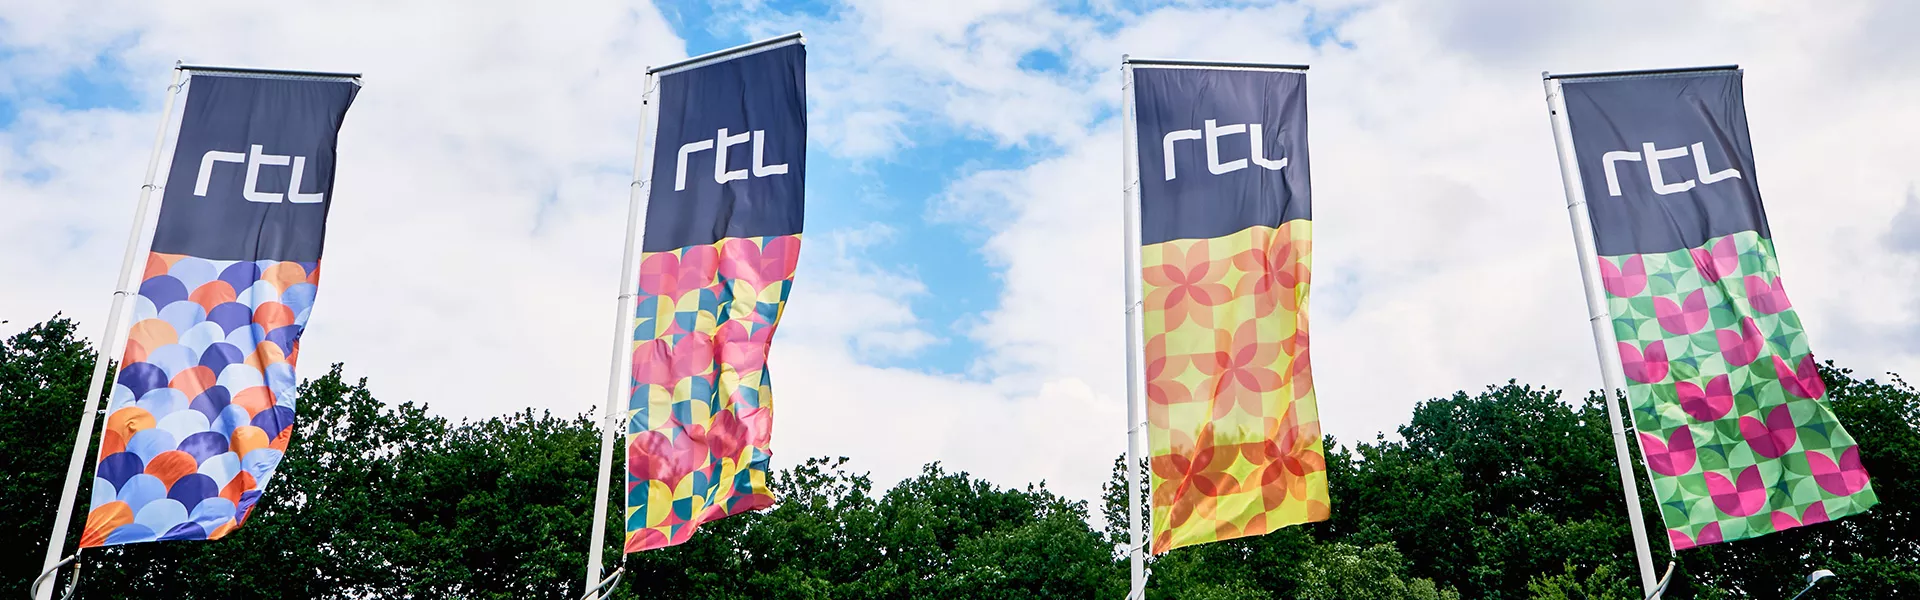 Optimierung von Reporting und Forecasting bei RTL